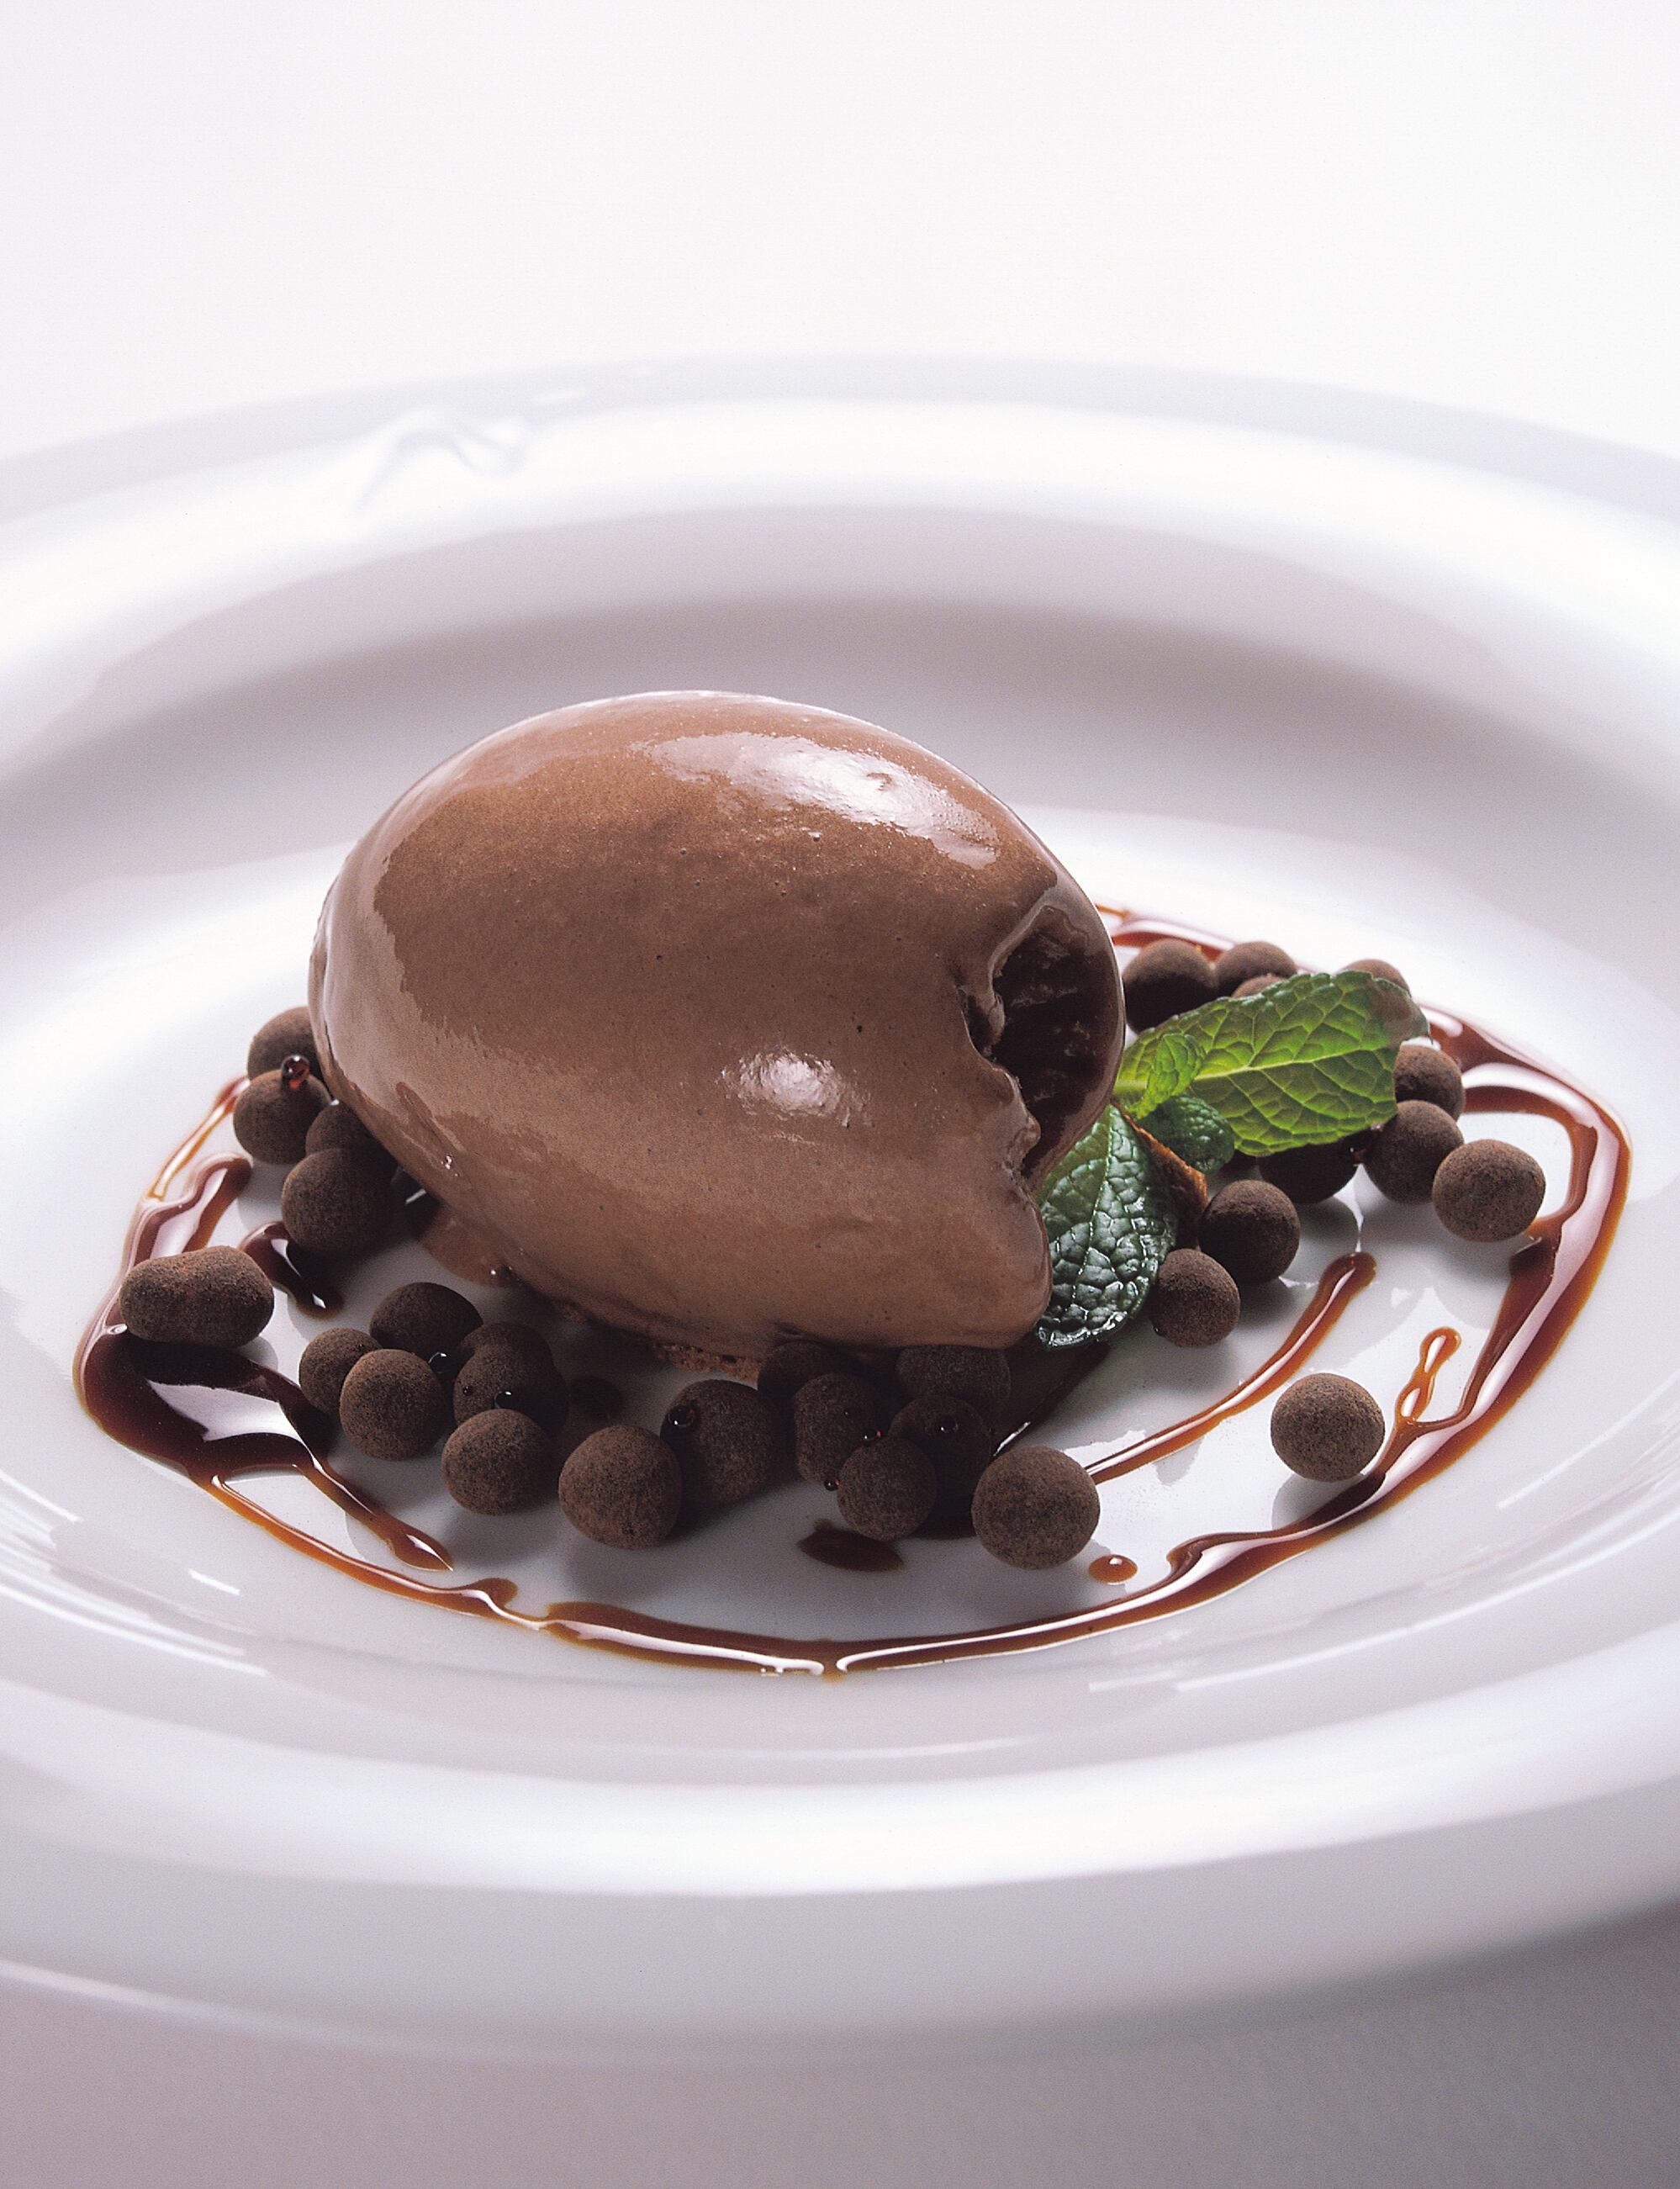 Quenelle de helado de chocolate de Angelo Corvitto incluidas en 'Los secretos del helado' (Grupo Vilbo).